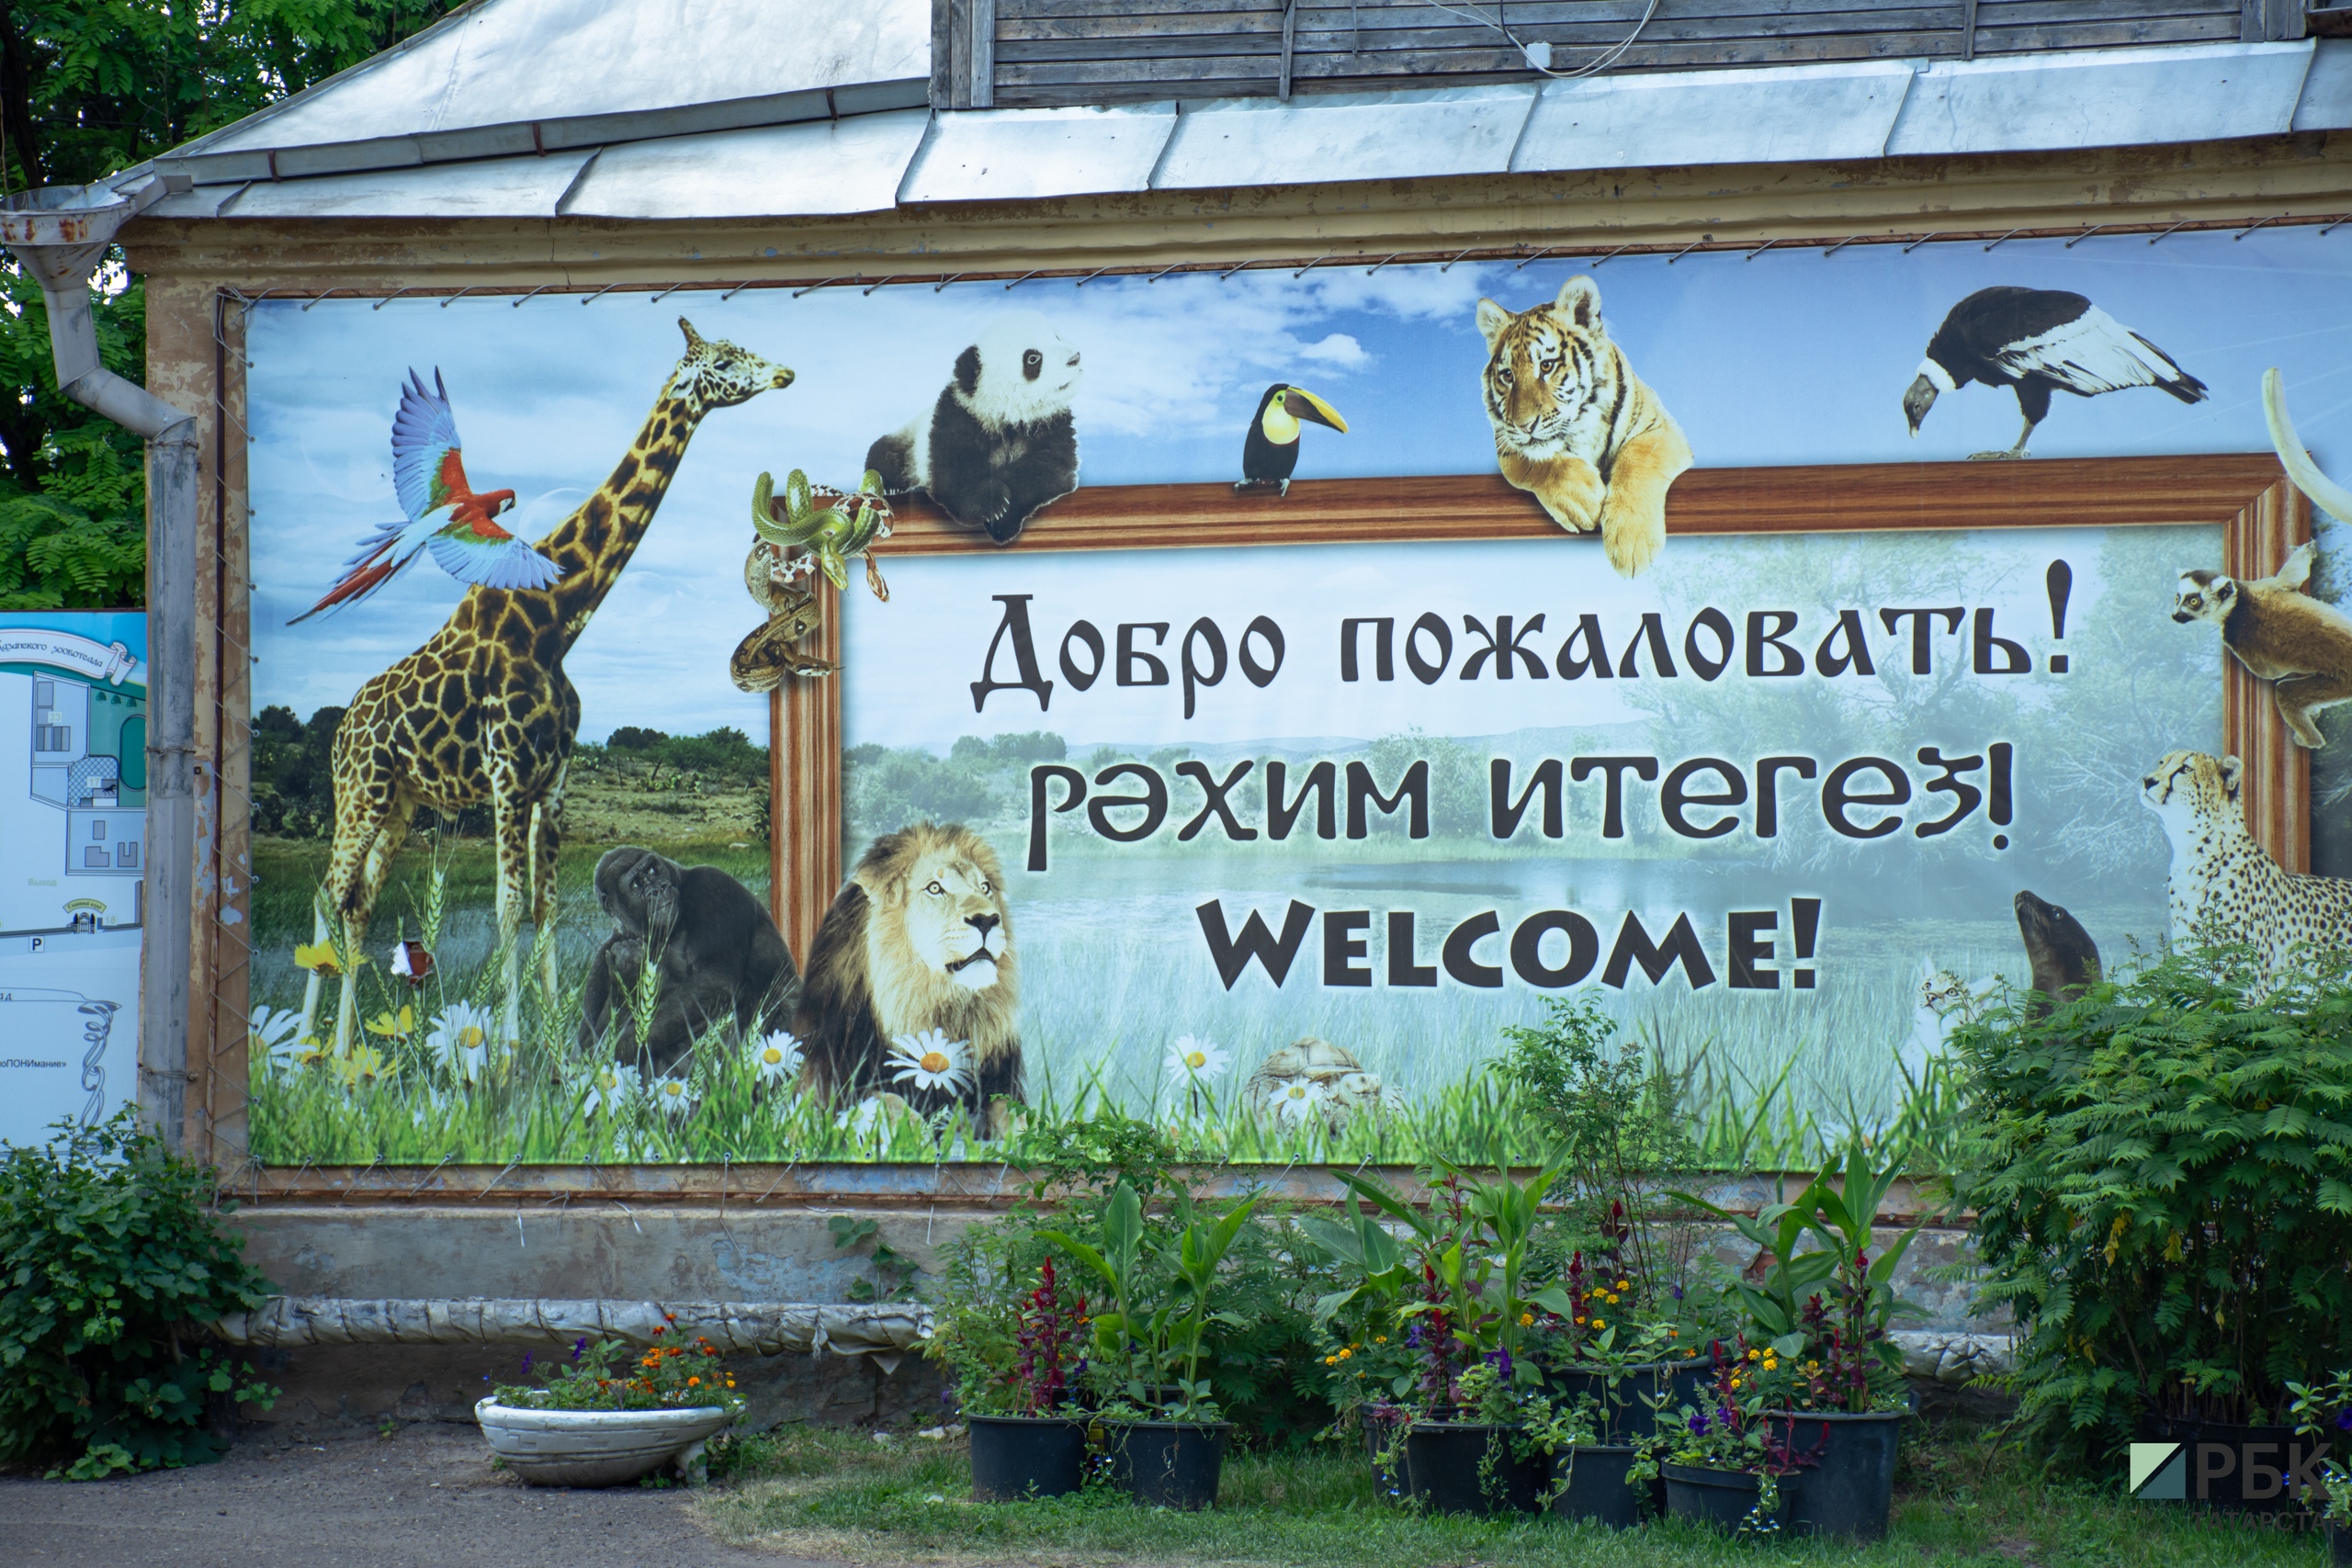 Зооботанический сад был основан при Казанском университете&nbsp;в 1806 году Карлом Фуксом. В новейшей истории его реконструкцию не могли начать с 2007 года: вопрос назрел, но финансирования не было.&nbsp;